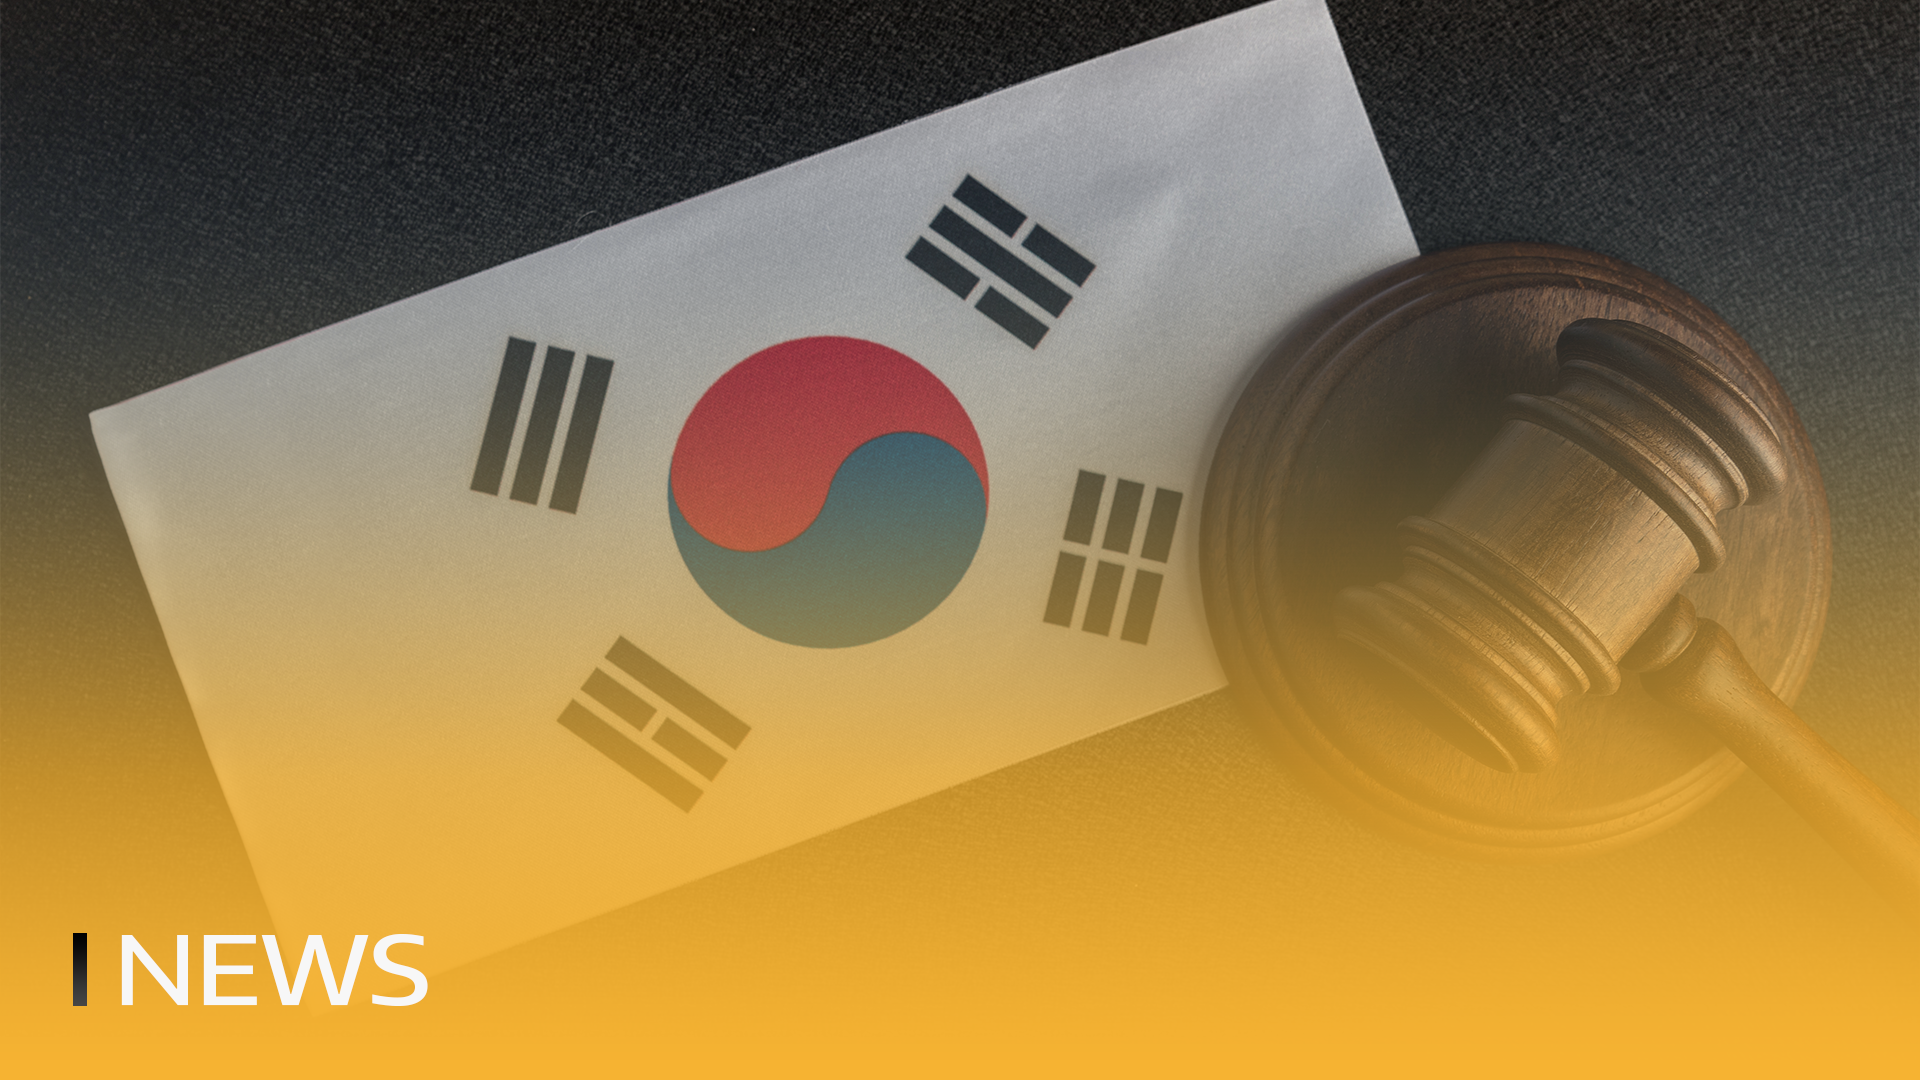 Južná Kórea zvyšuje reguláciu kryptomien